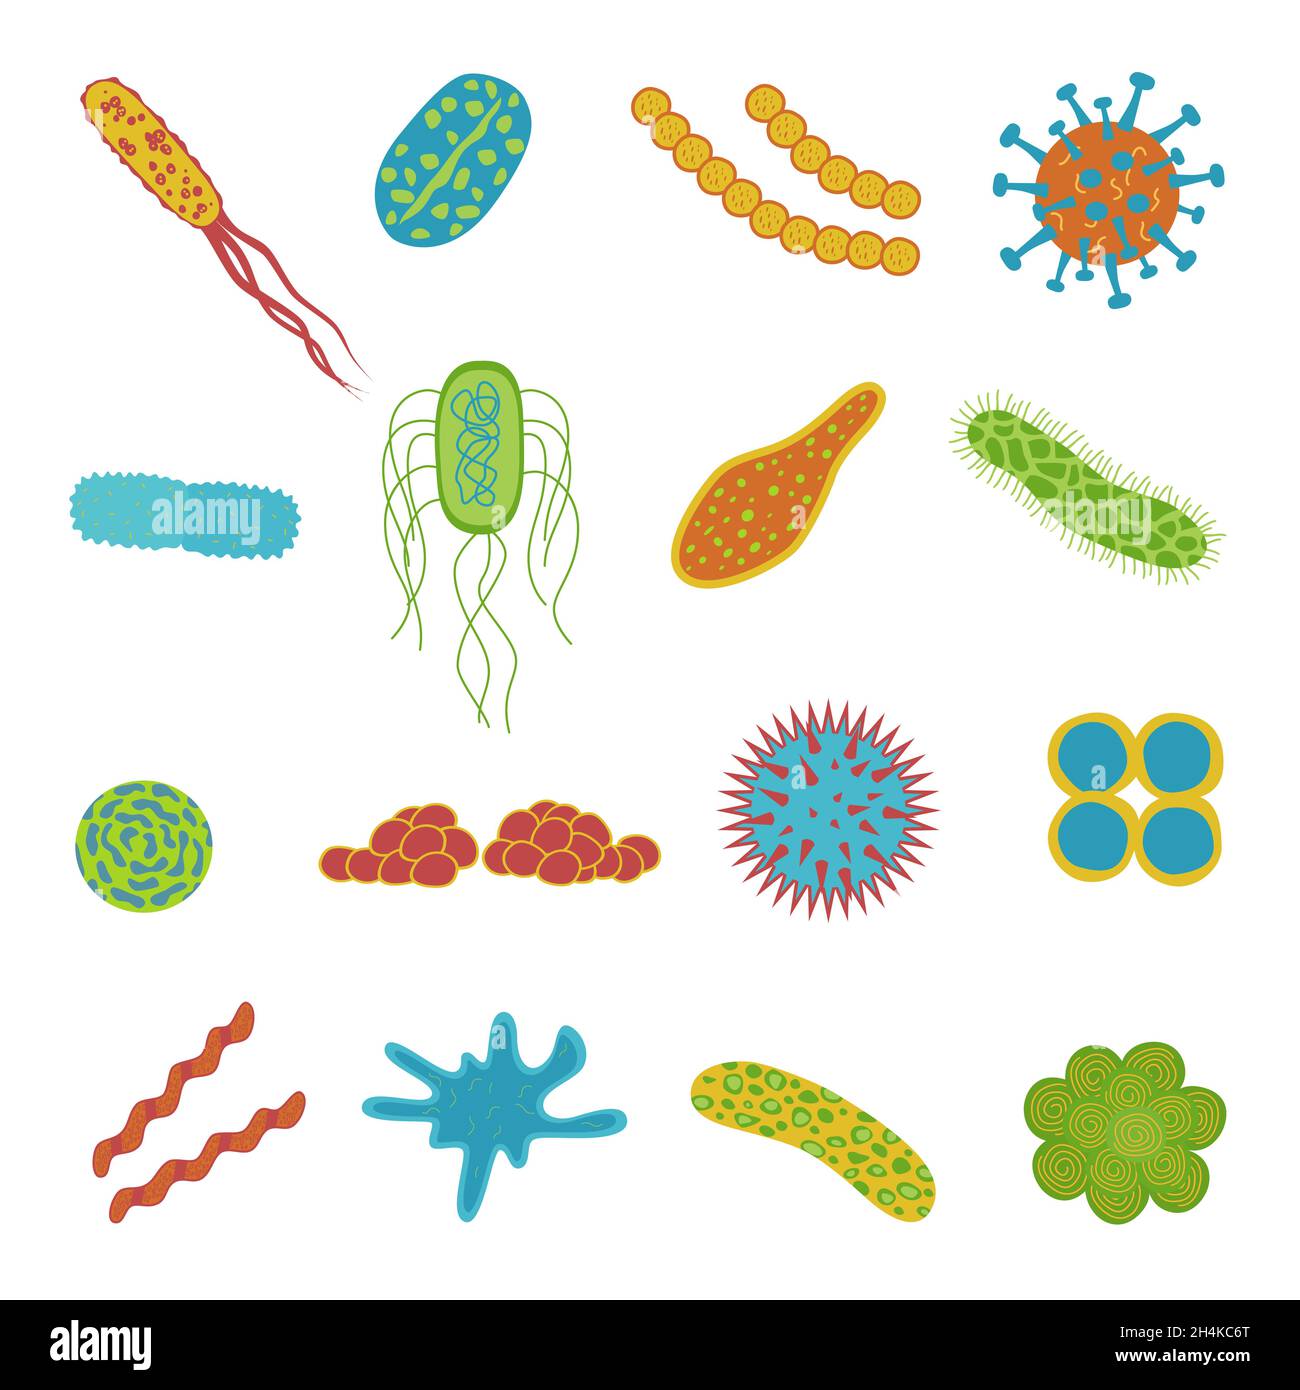 Auf weißem Hintergrund isolierte Viren- und Bakteriensymbole. Mikrobiom im flachen Cartoon-Stil. Vektordarstellung von Mikroorganismen. Stock Vektor